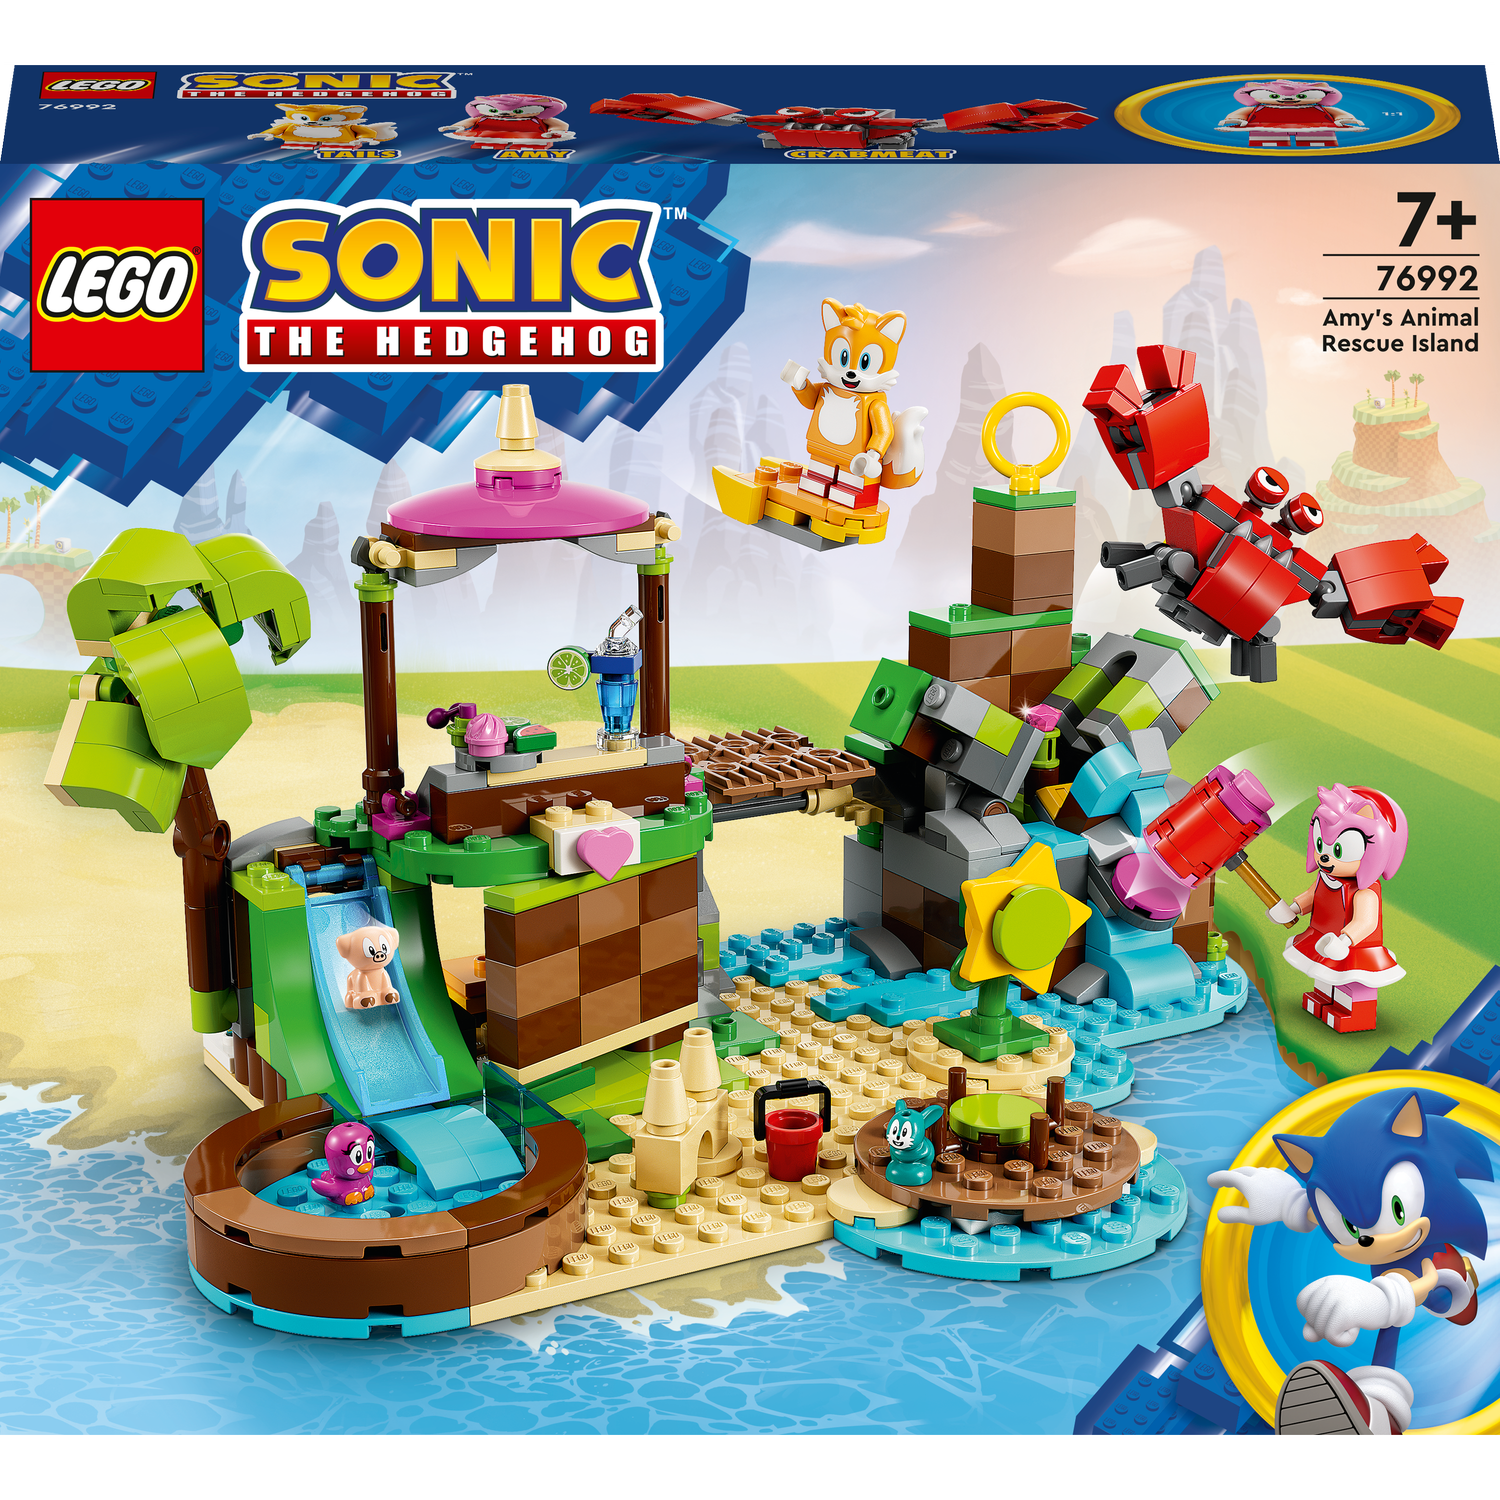 Конструктор LEGO Sonic the Hedgehog Остров Эми для спасения животных, 388 деталей (76992) - фото 1